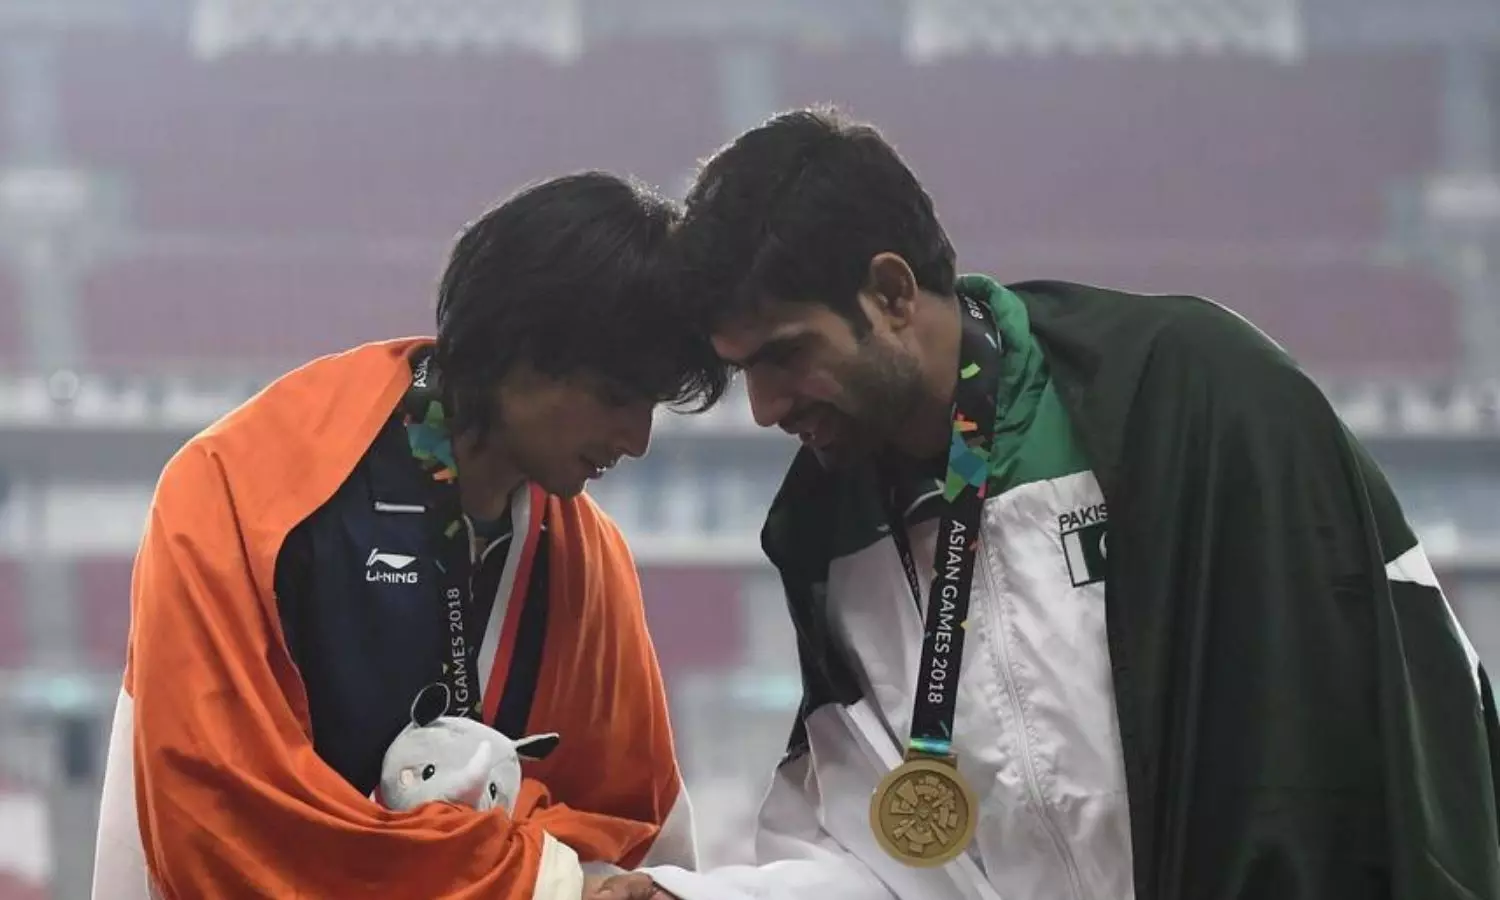 Neeraj Chopra is a medal favorite in the Men's Javelin in Tokyo 2020